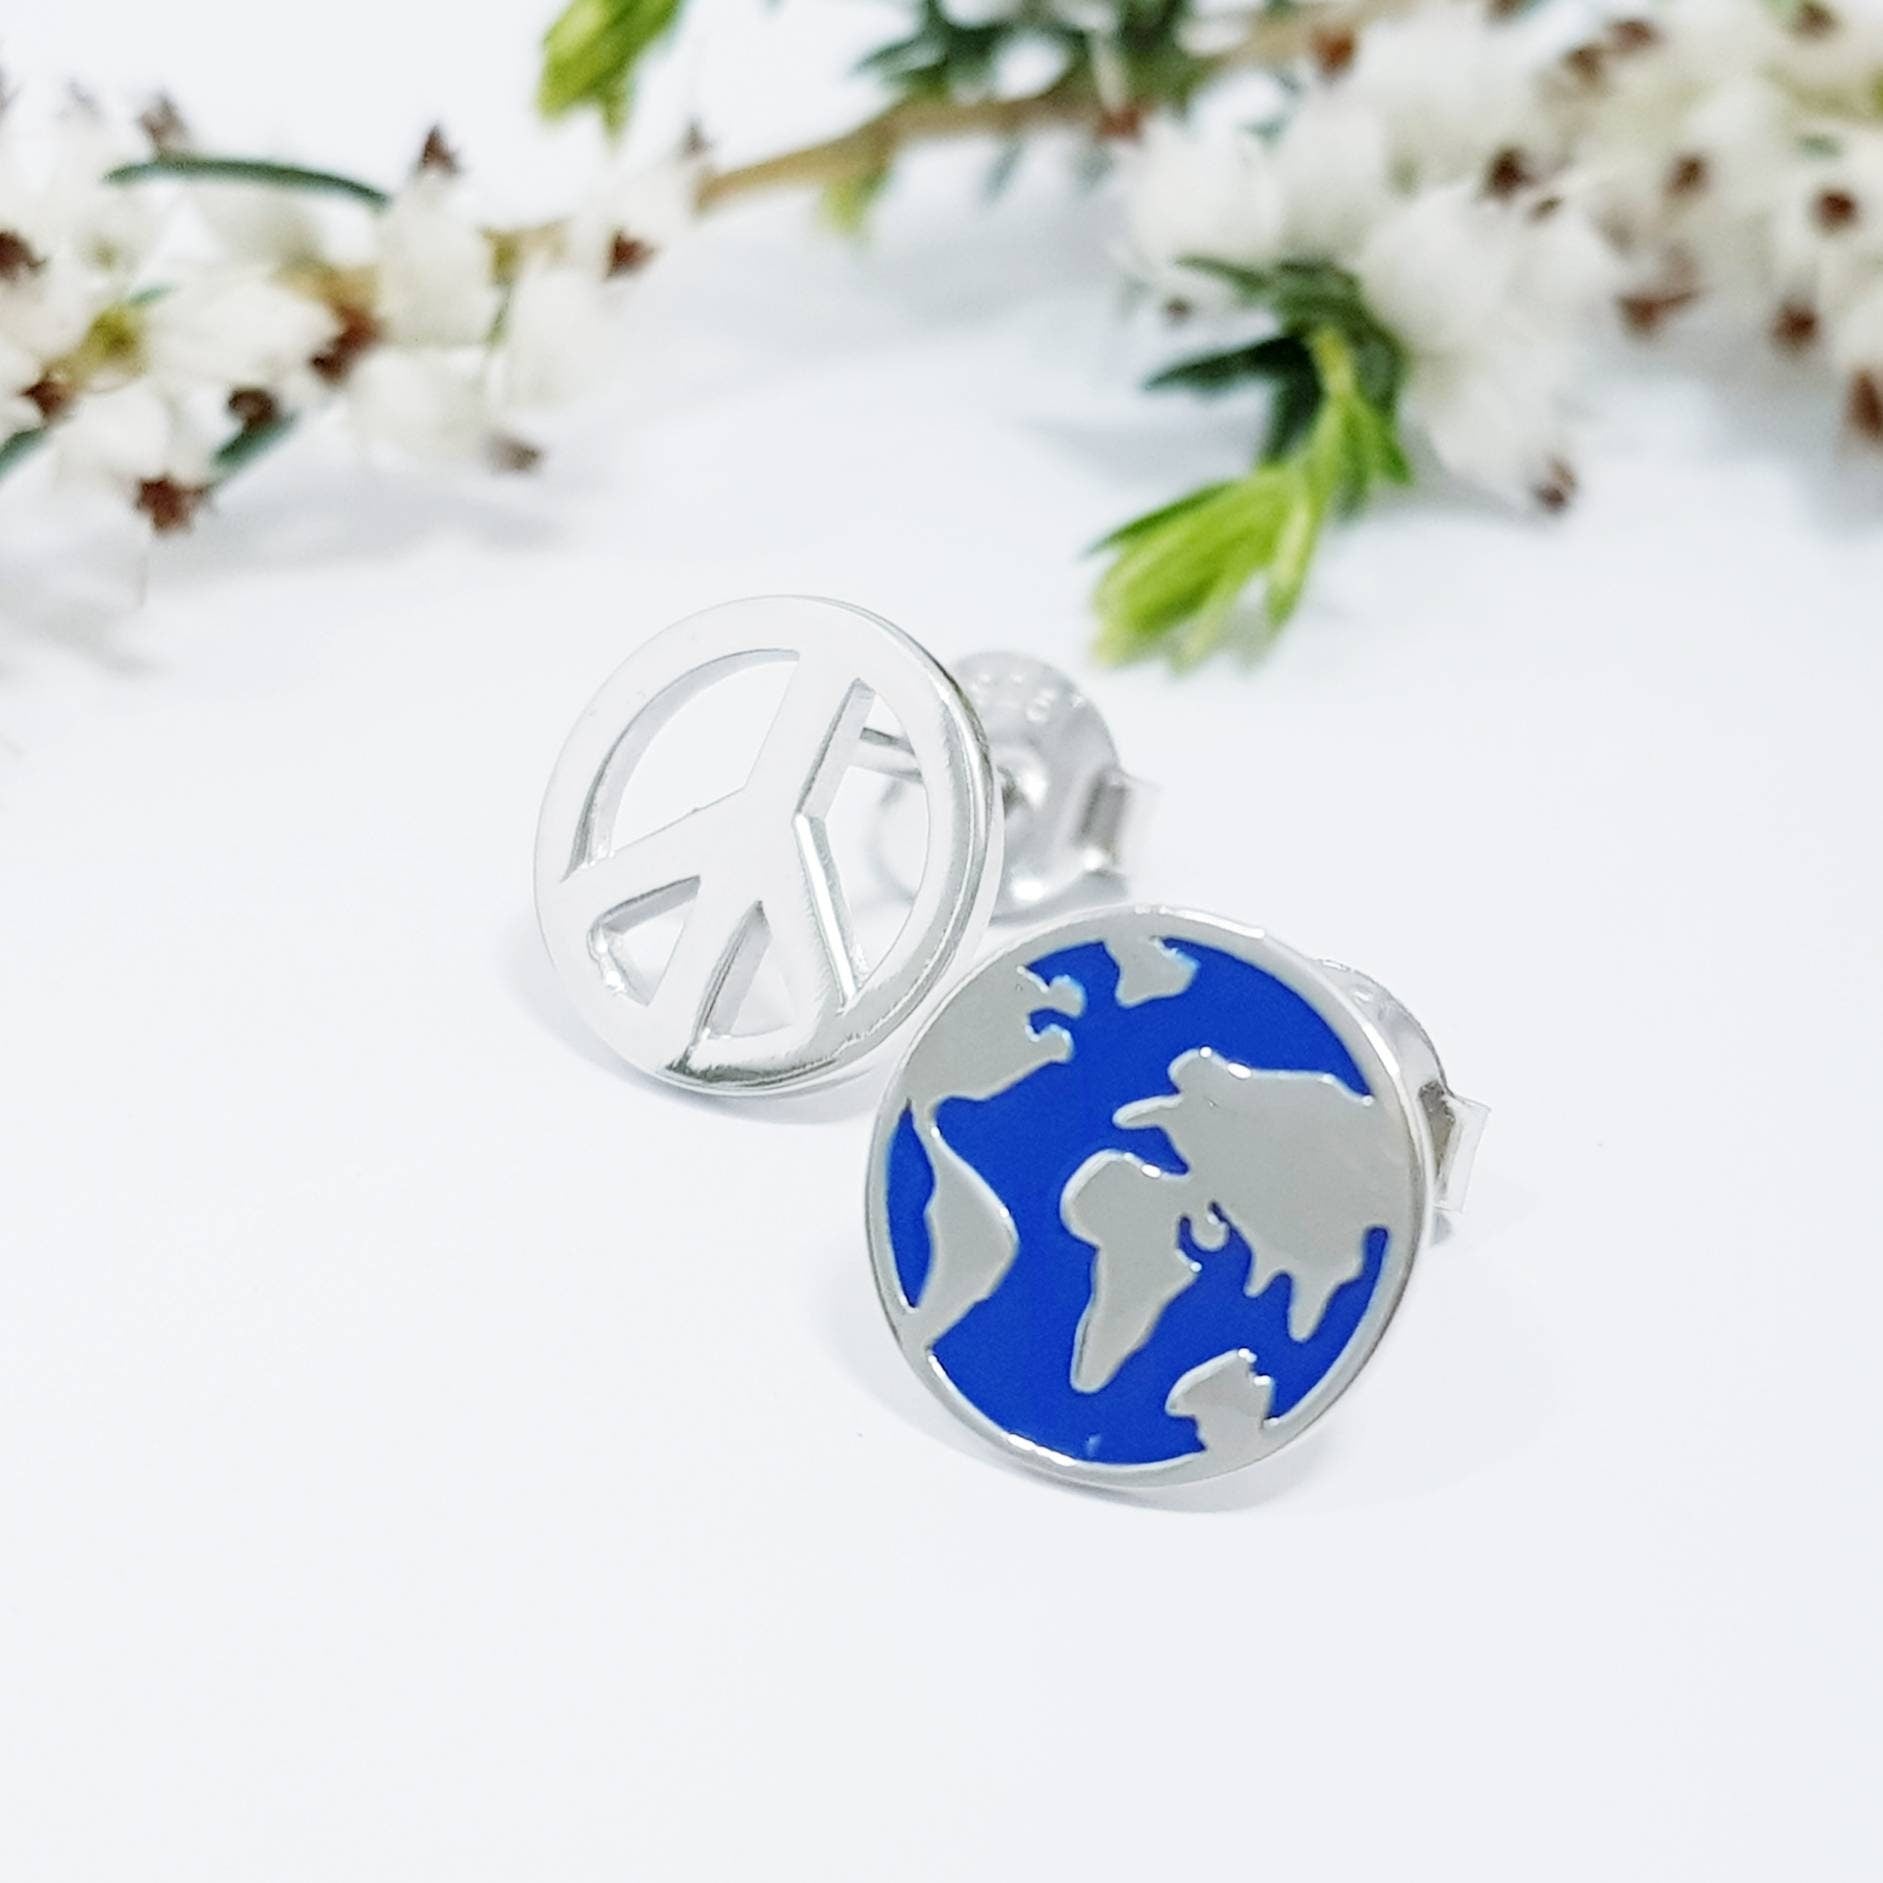 World peace sterling silver stud earrings, wanderlust earrings, globe studs, peace earrings